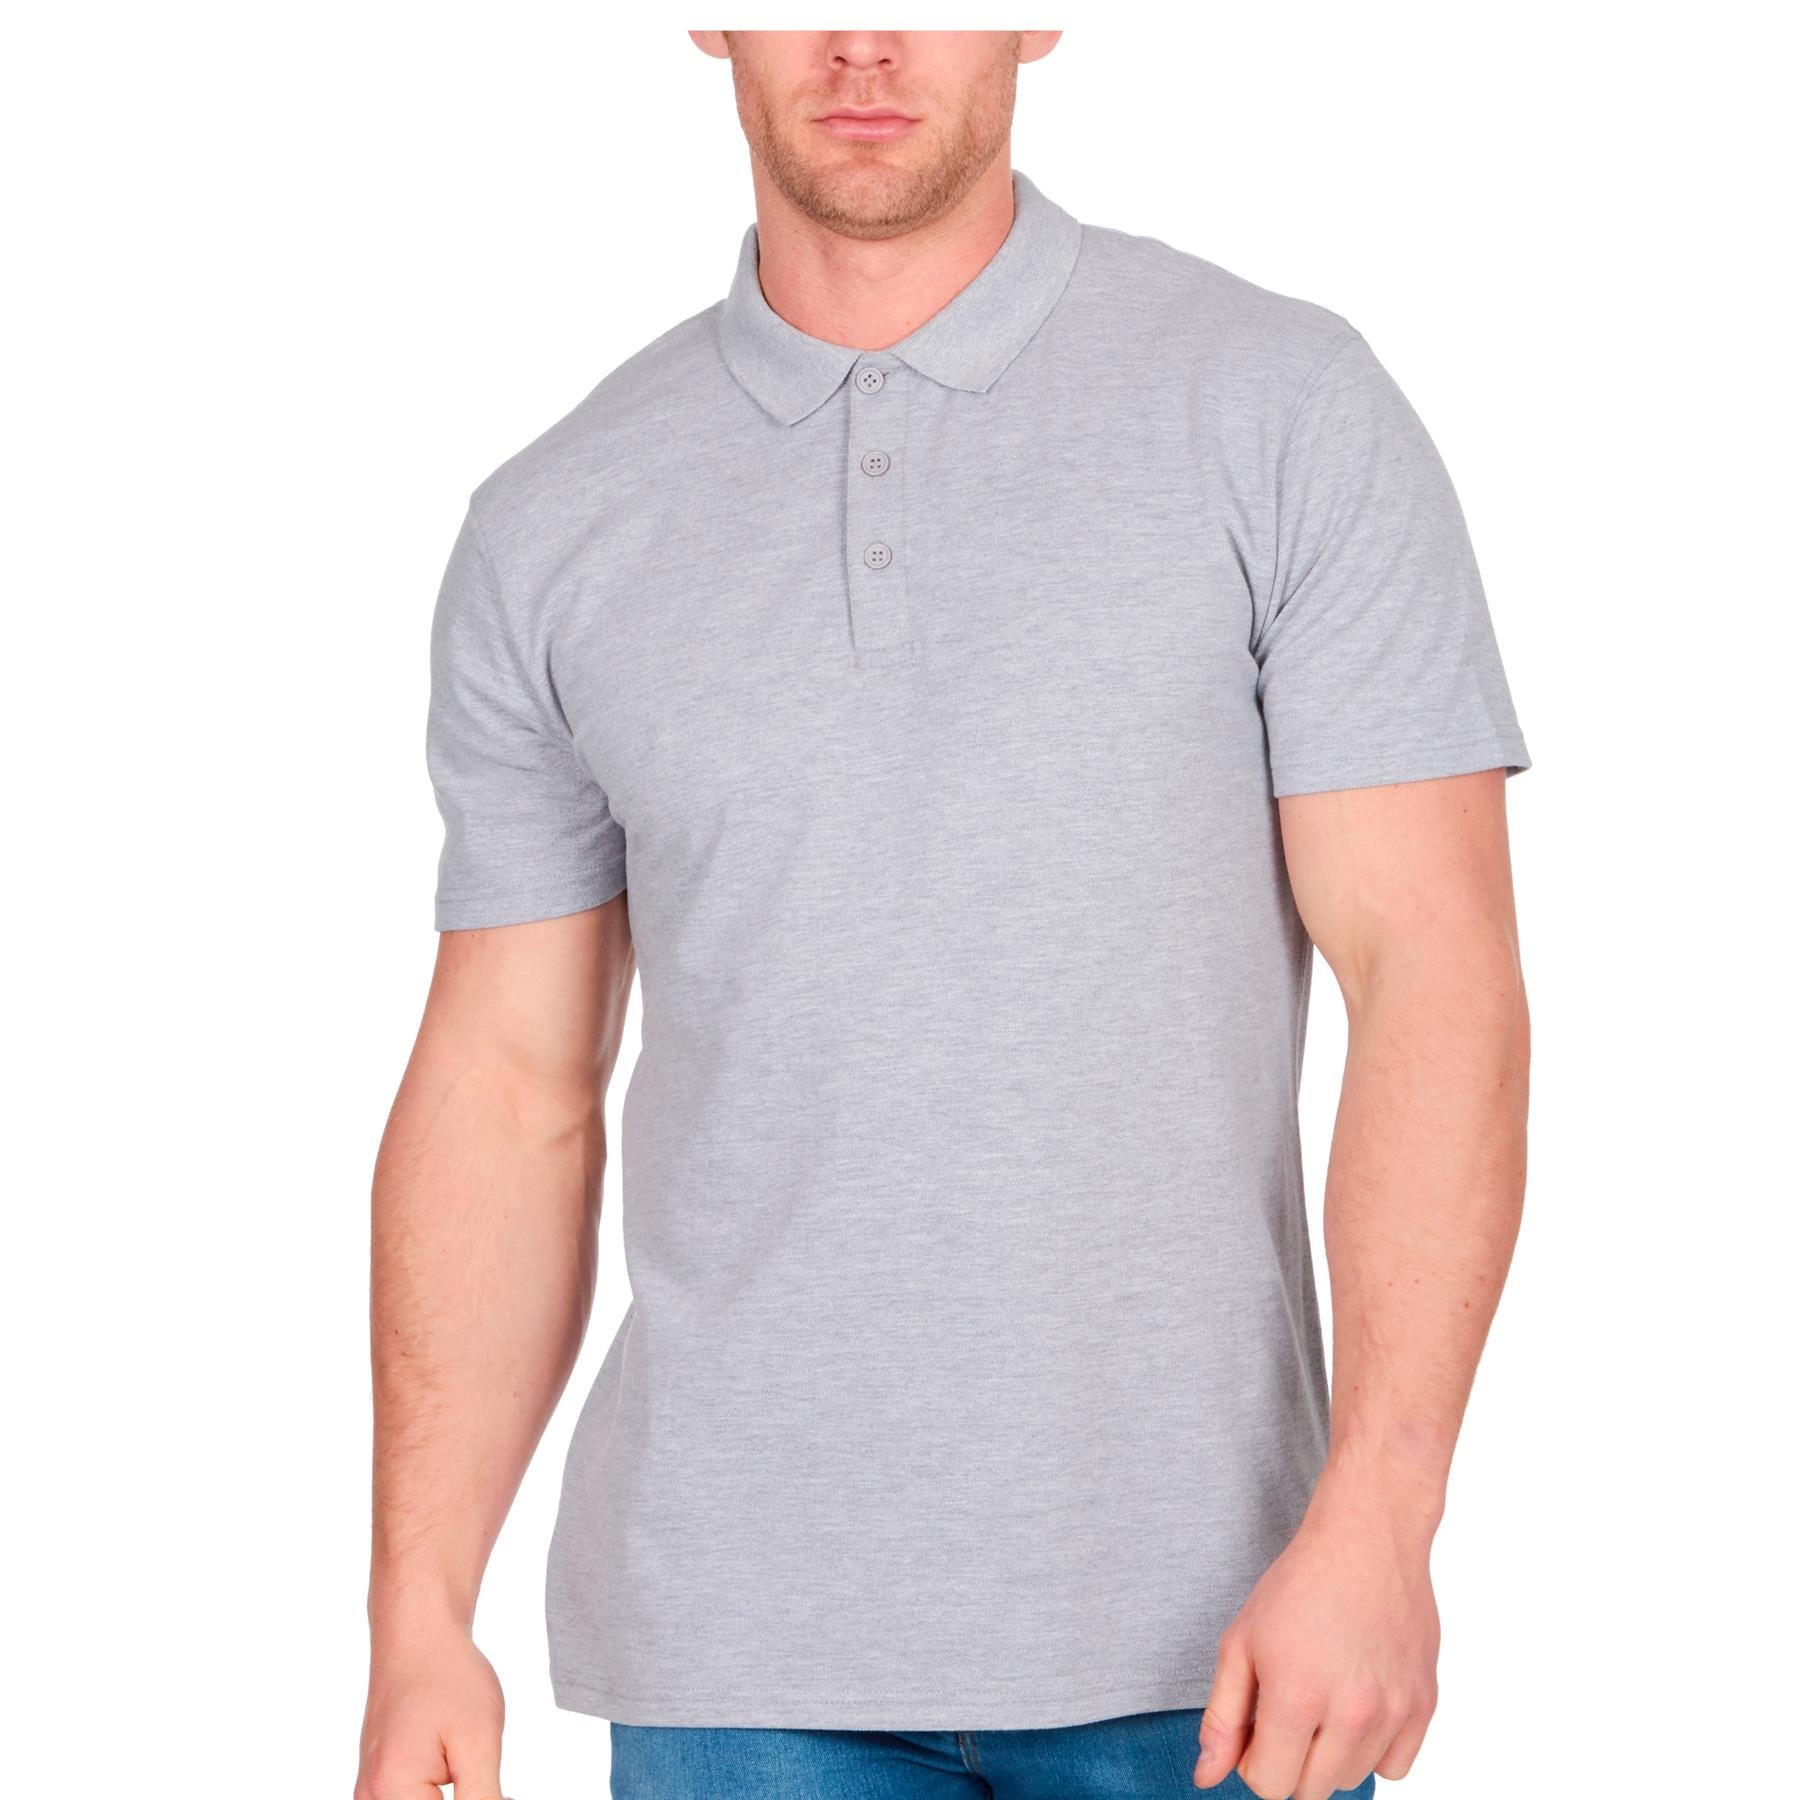 Kelly Green Short Sleeve Polo T-Shirt